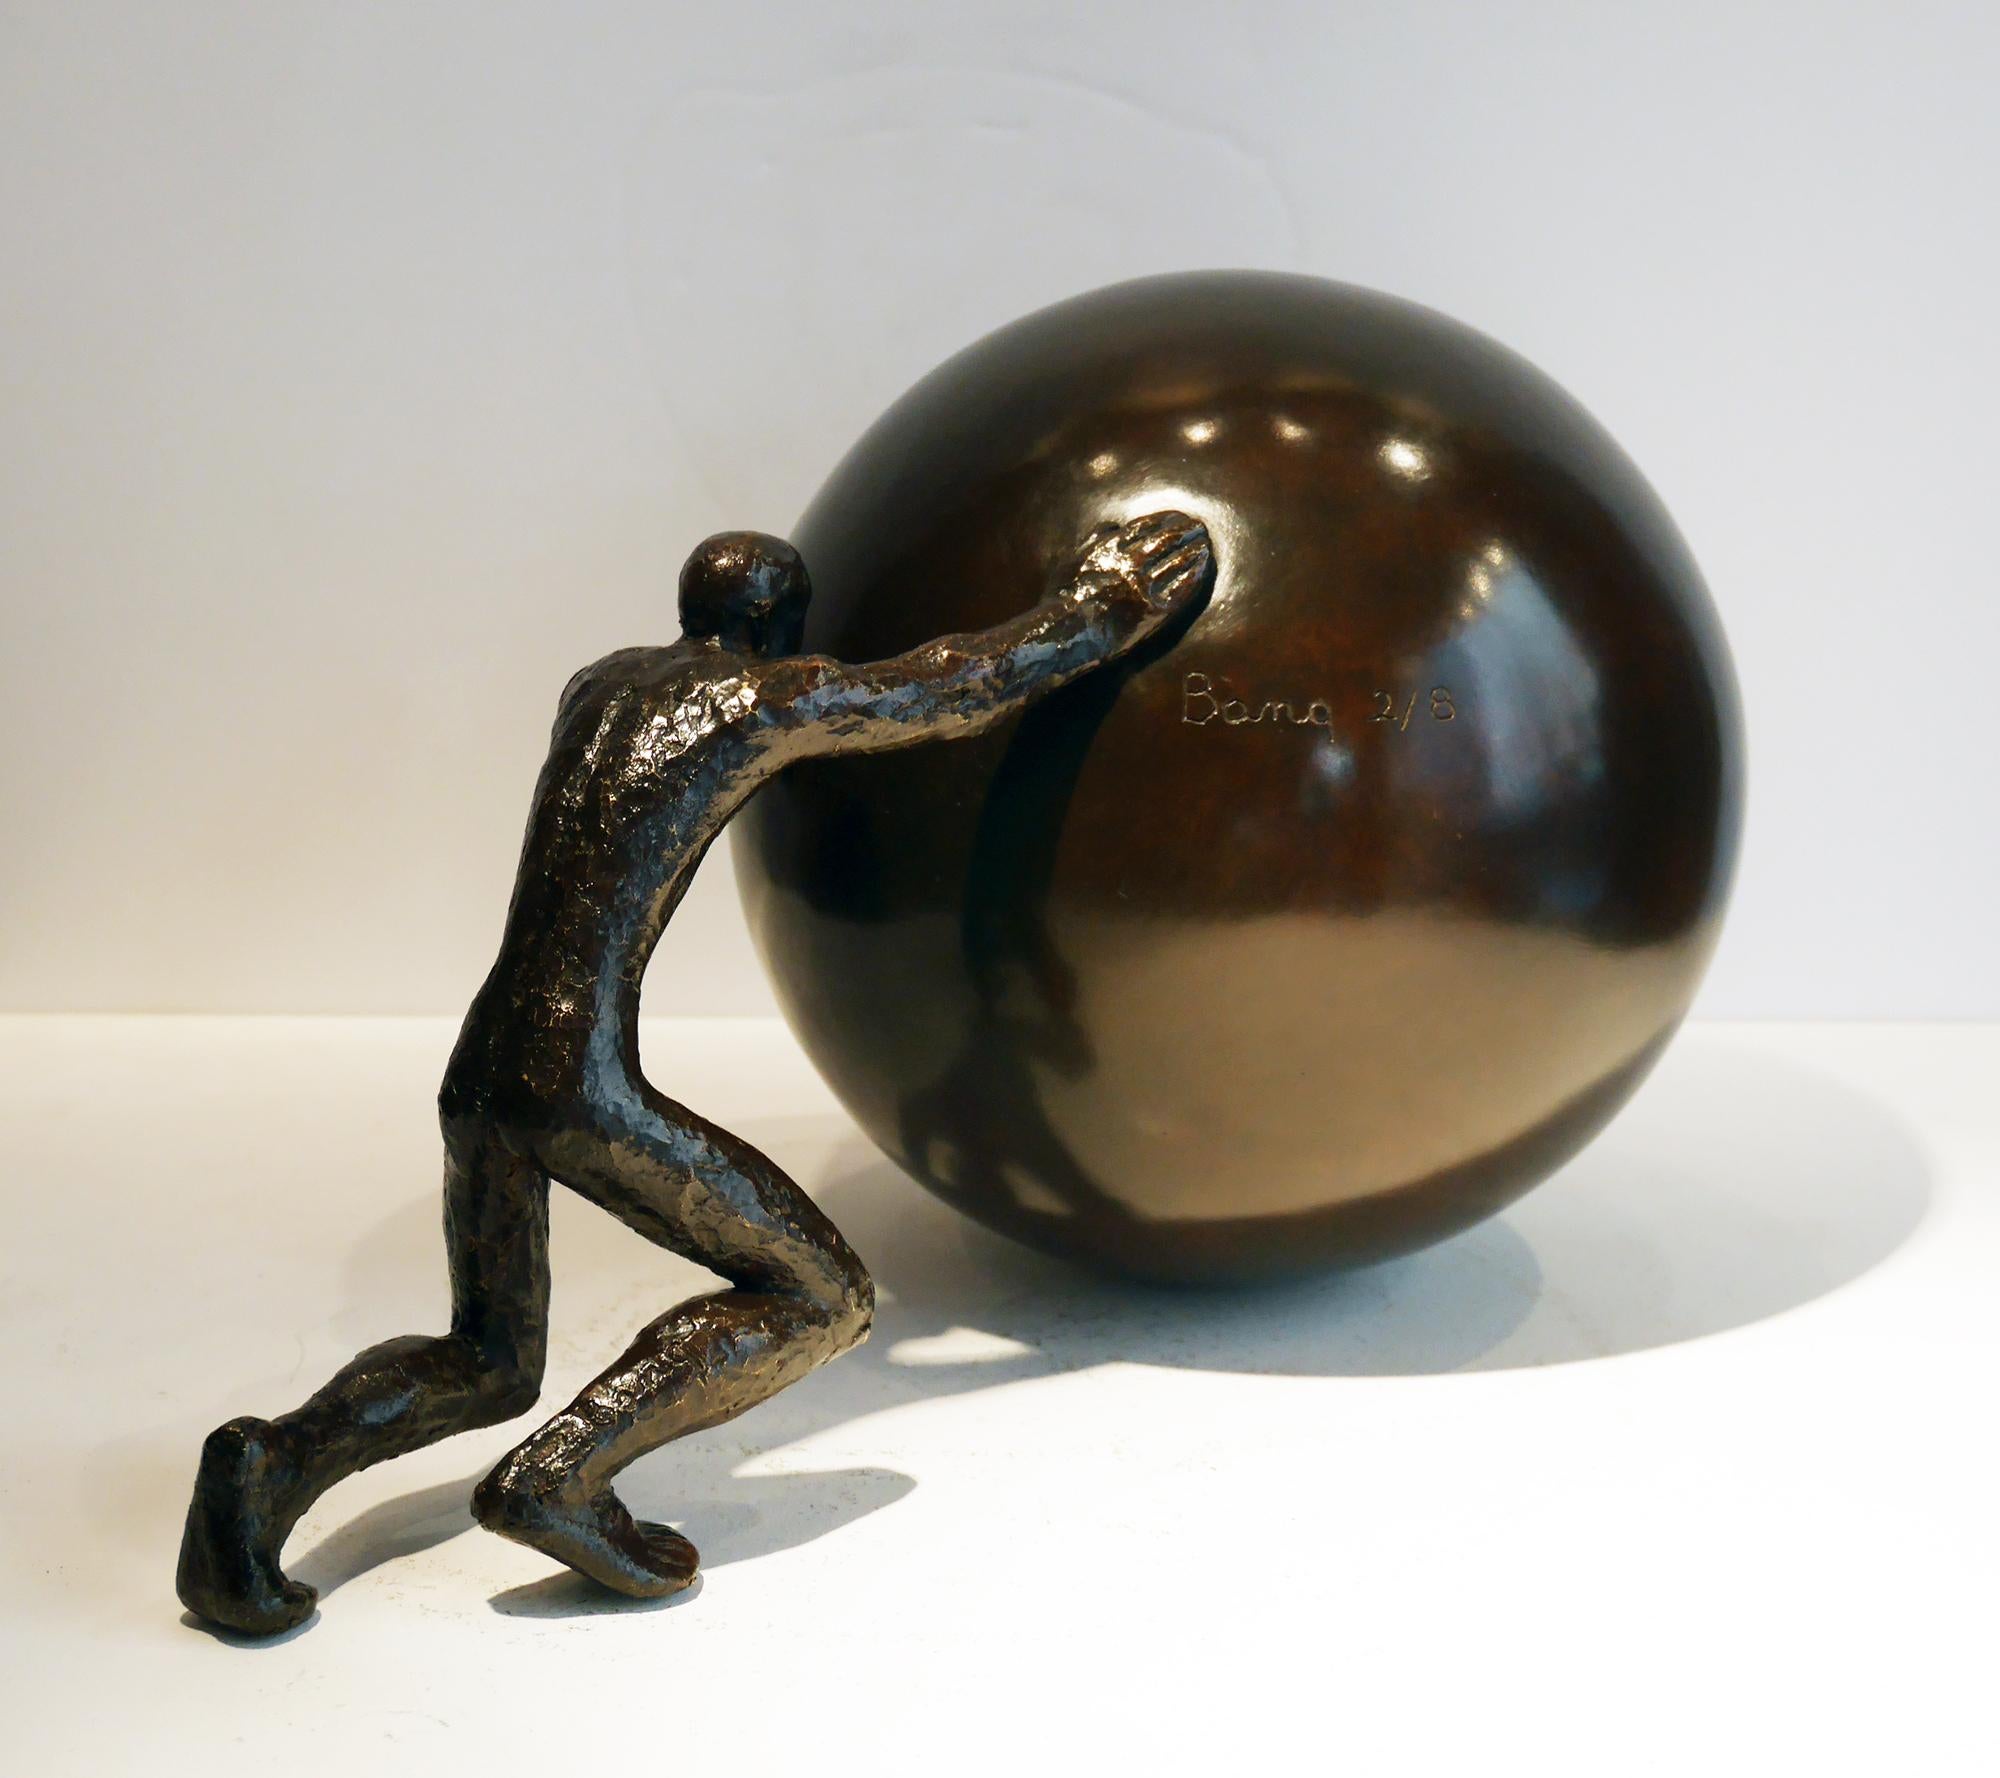 Sisyphus, figurative sculpture, bronze, mythology, man pushing rock, Maguy Banq 1